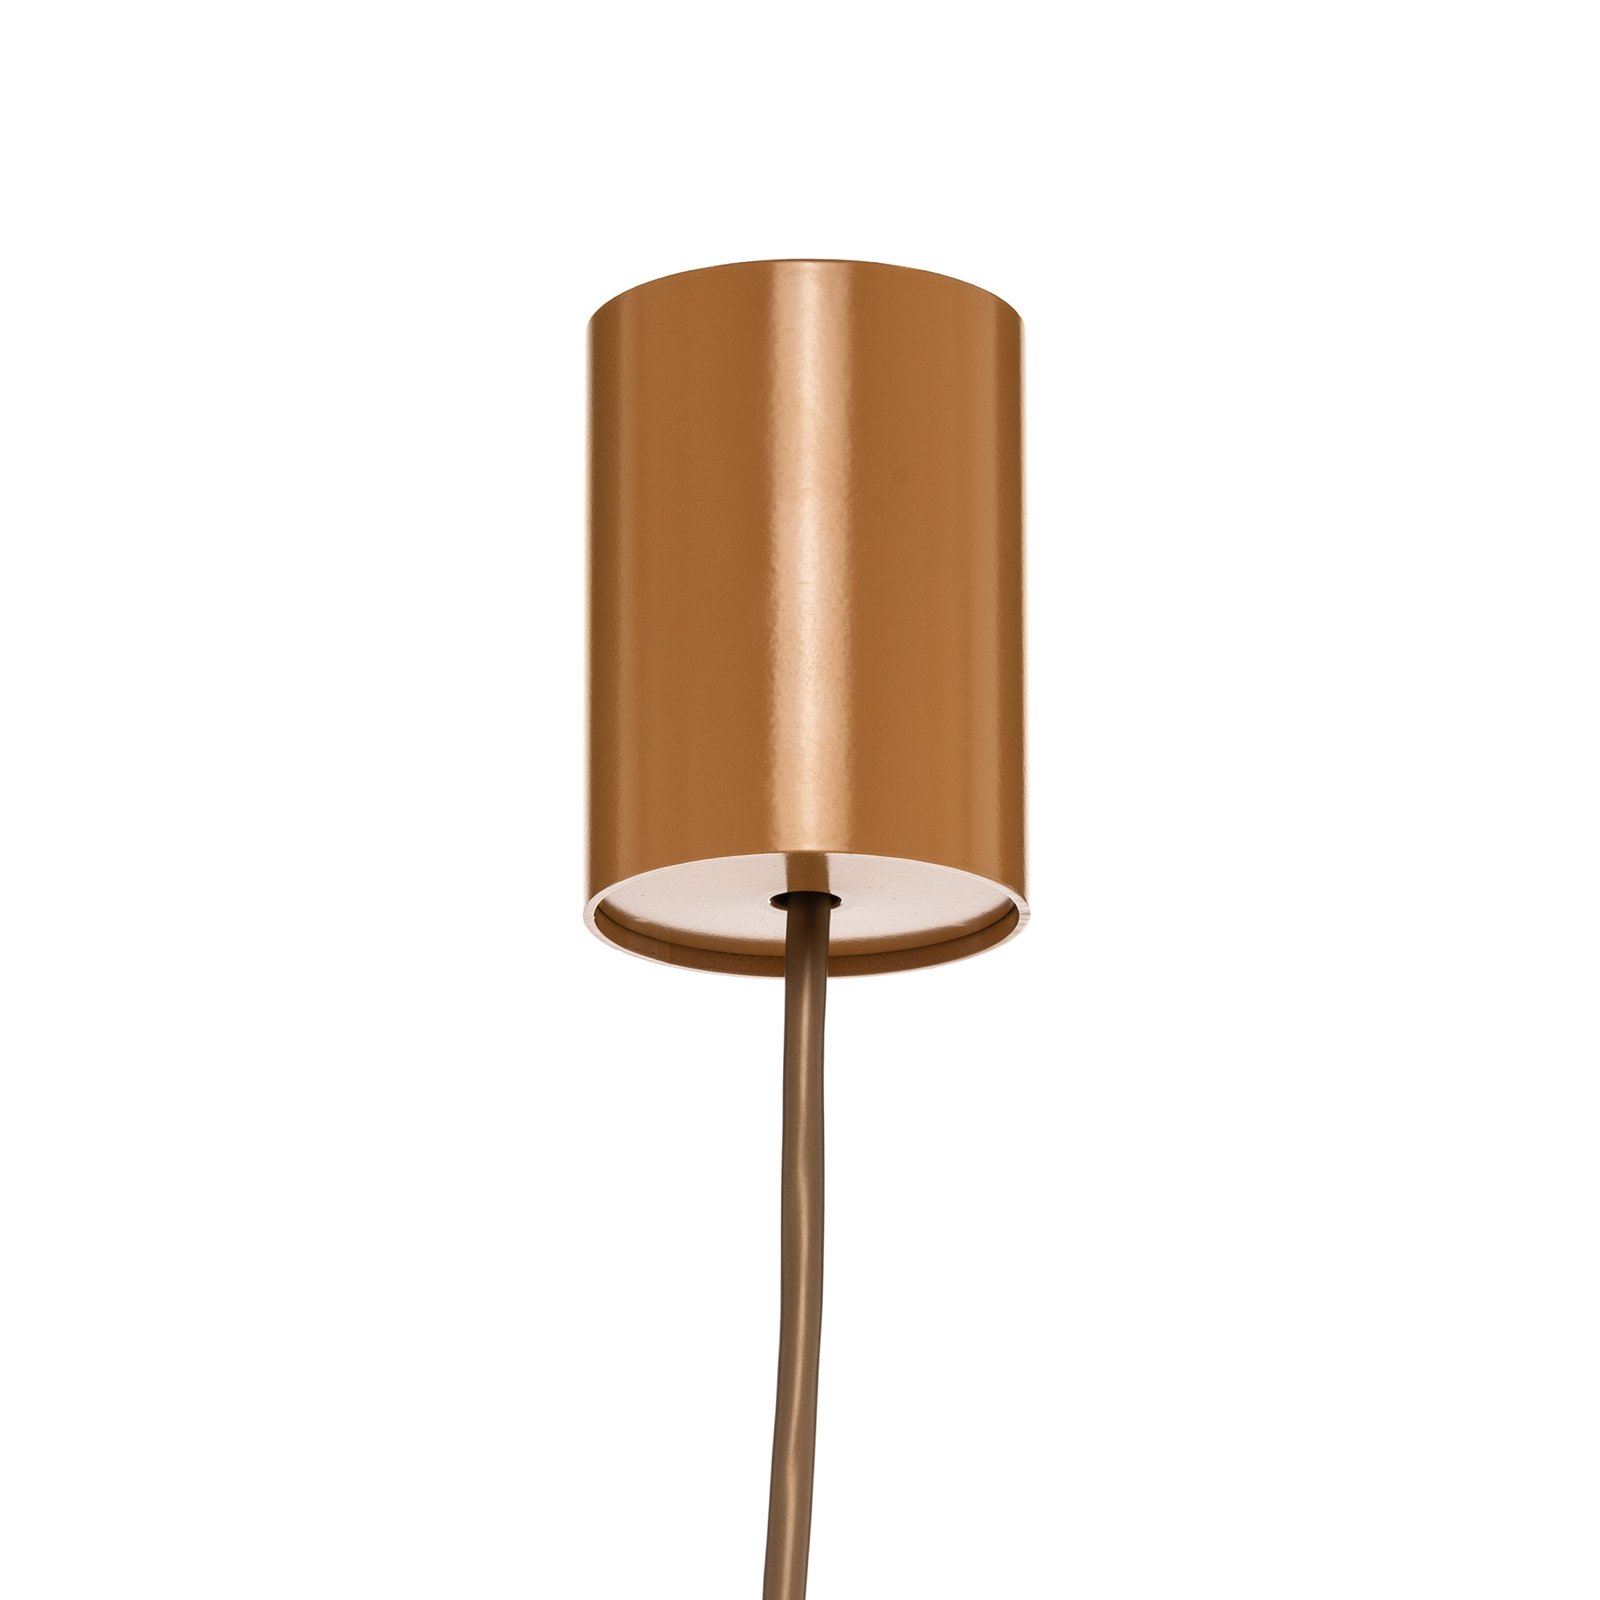 Hanglamp Ika ID met houtlamellen-kap Ø51cm